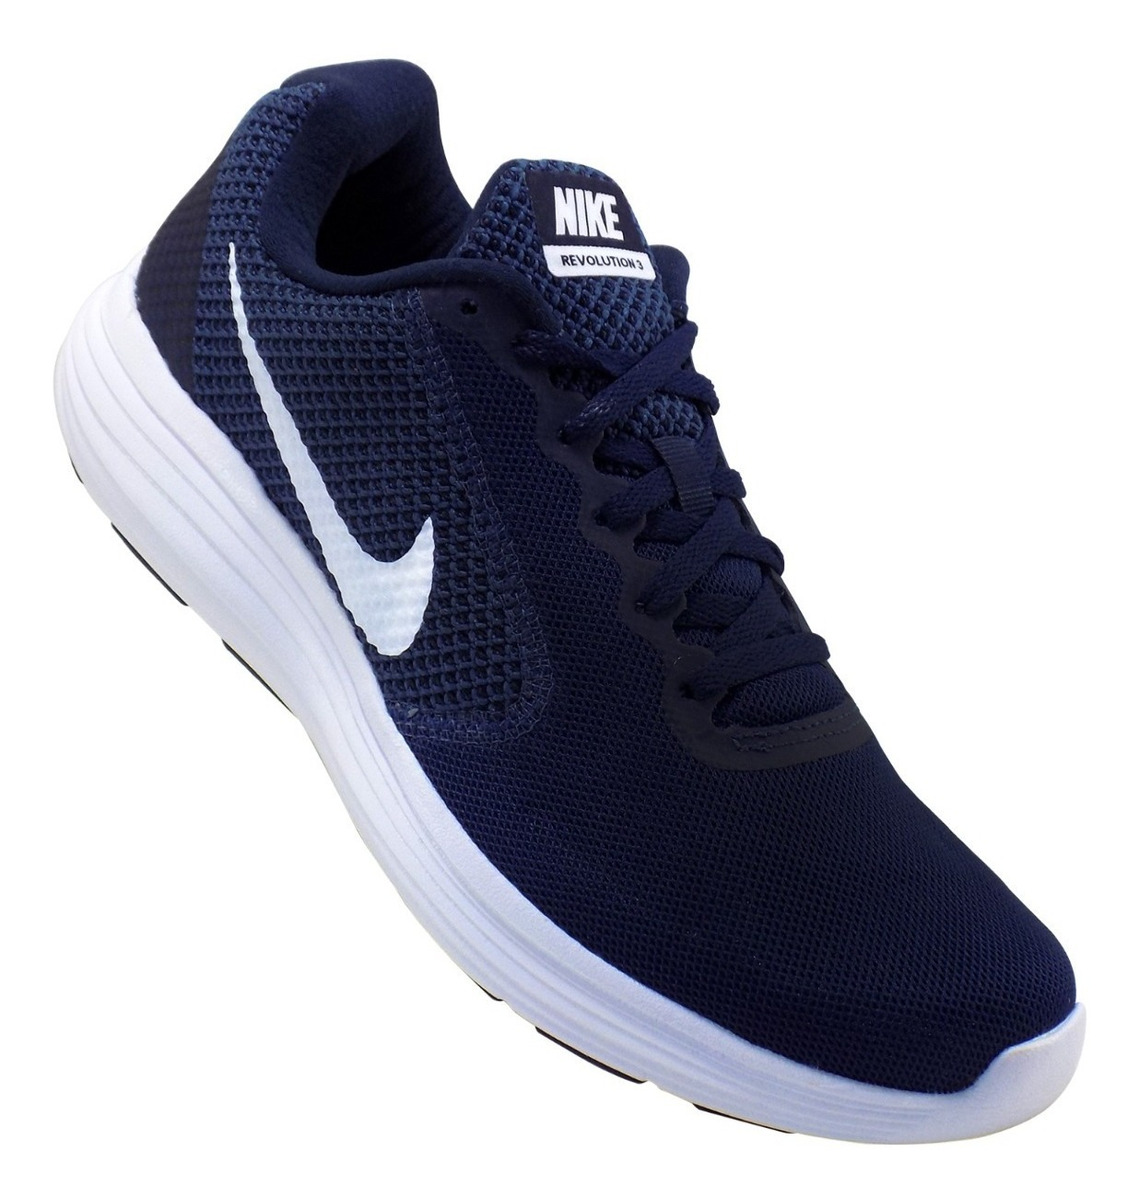 Tenis Nike Revolution 3 Running Para Hombre Azul Marino Mercado Libre